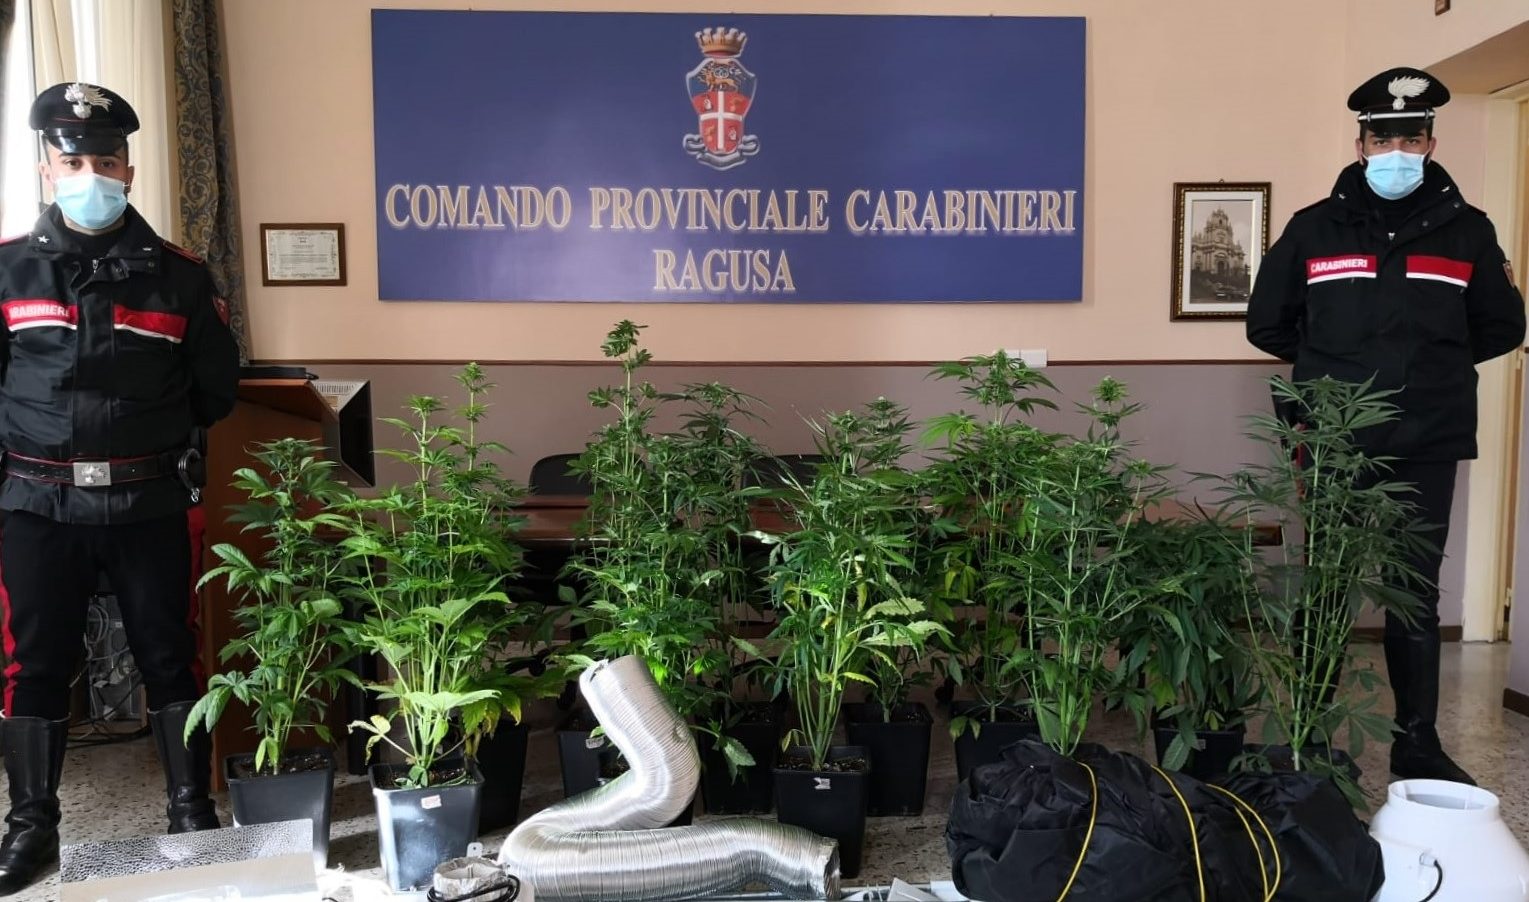  Ragusa – La marijuana è un affare di famiglia: coltivazione in casa, arrestati padre e figlio